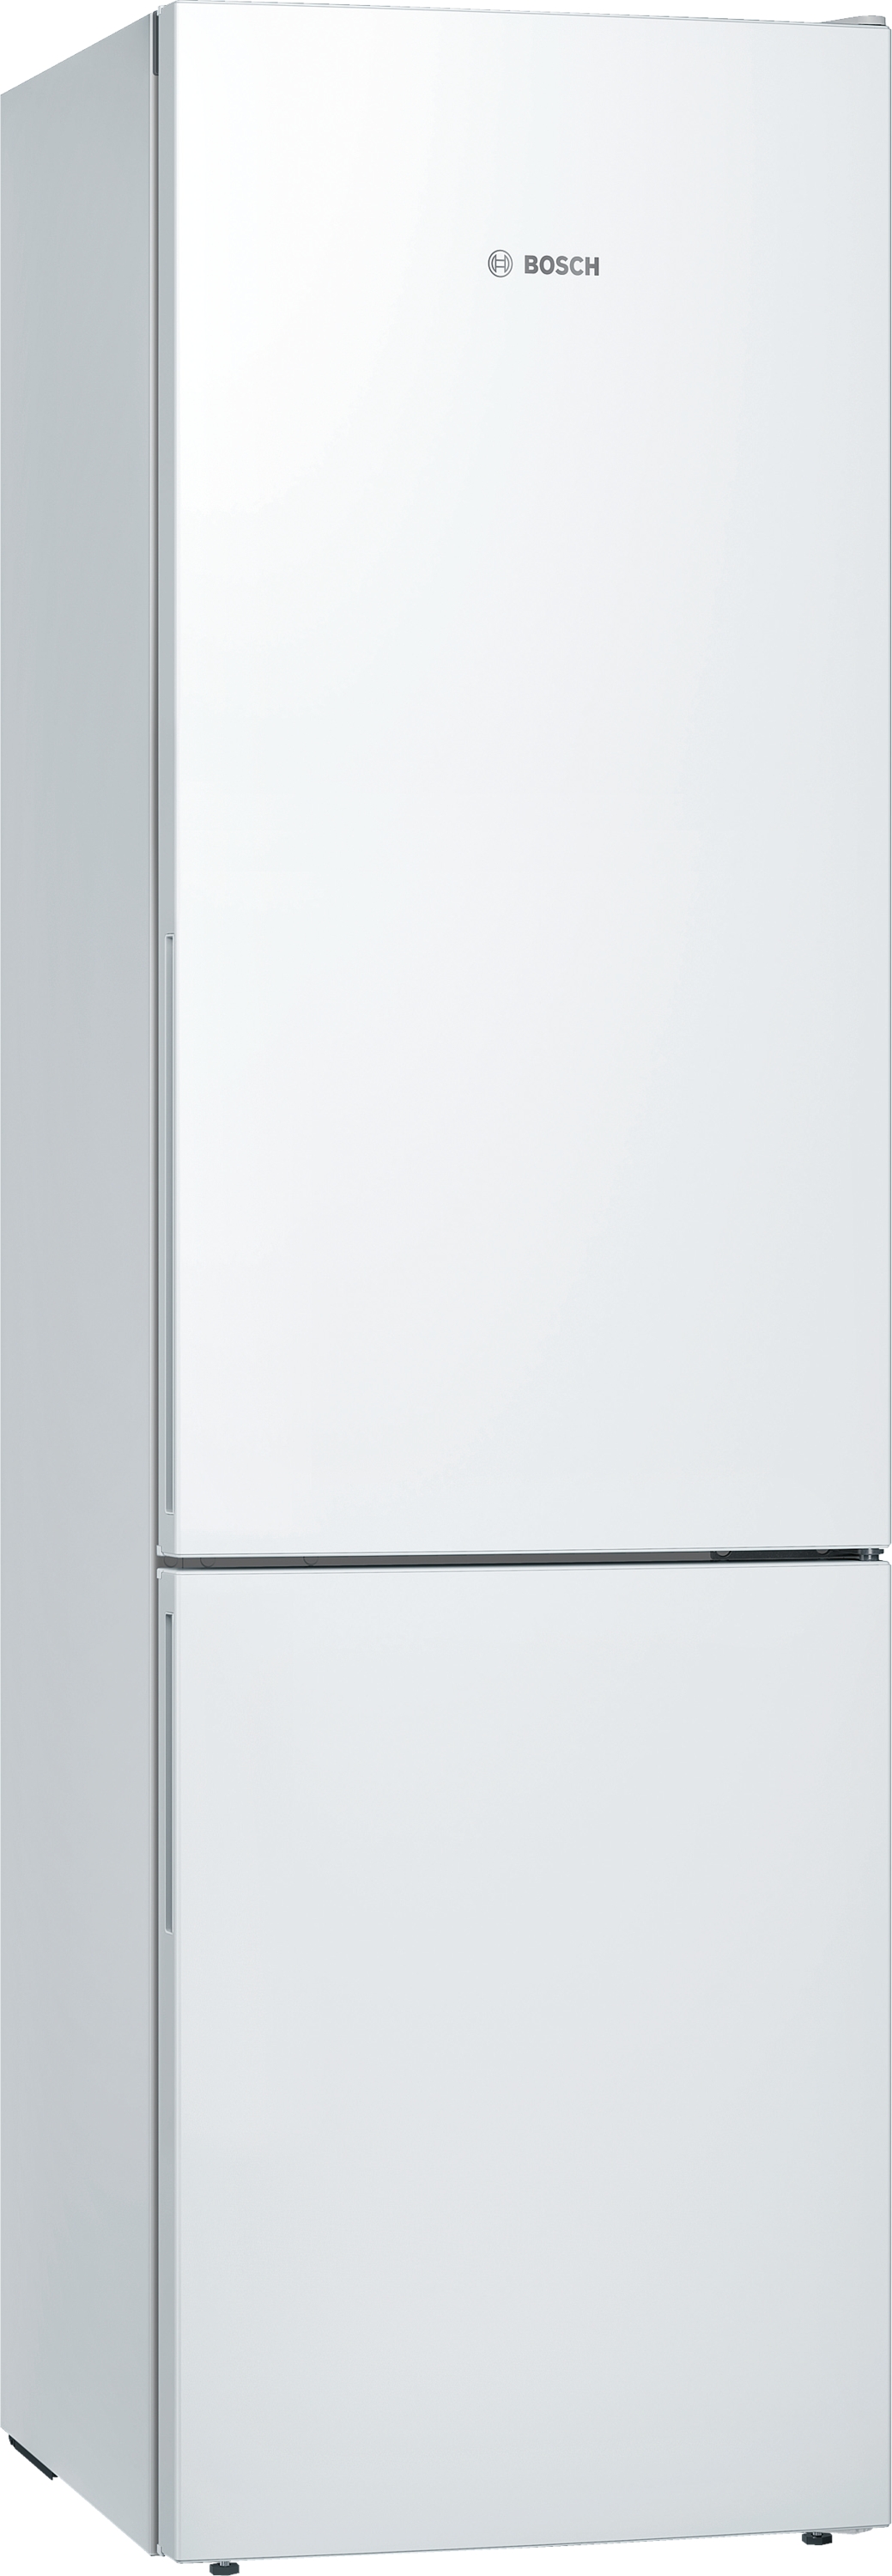 Bosch KGE39AWCA Serie | 6, Freistehende Kühl-Gefrier-Kombination weiß |  Standgeräte | Kühl-Gefrierkombinationen | Kühlsysteme | Hamp Hausgeräte